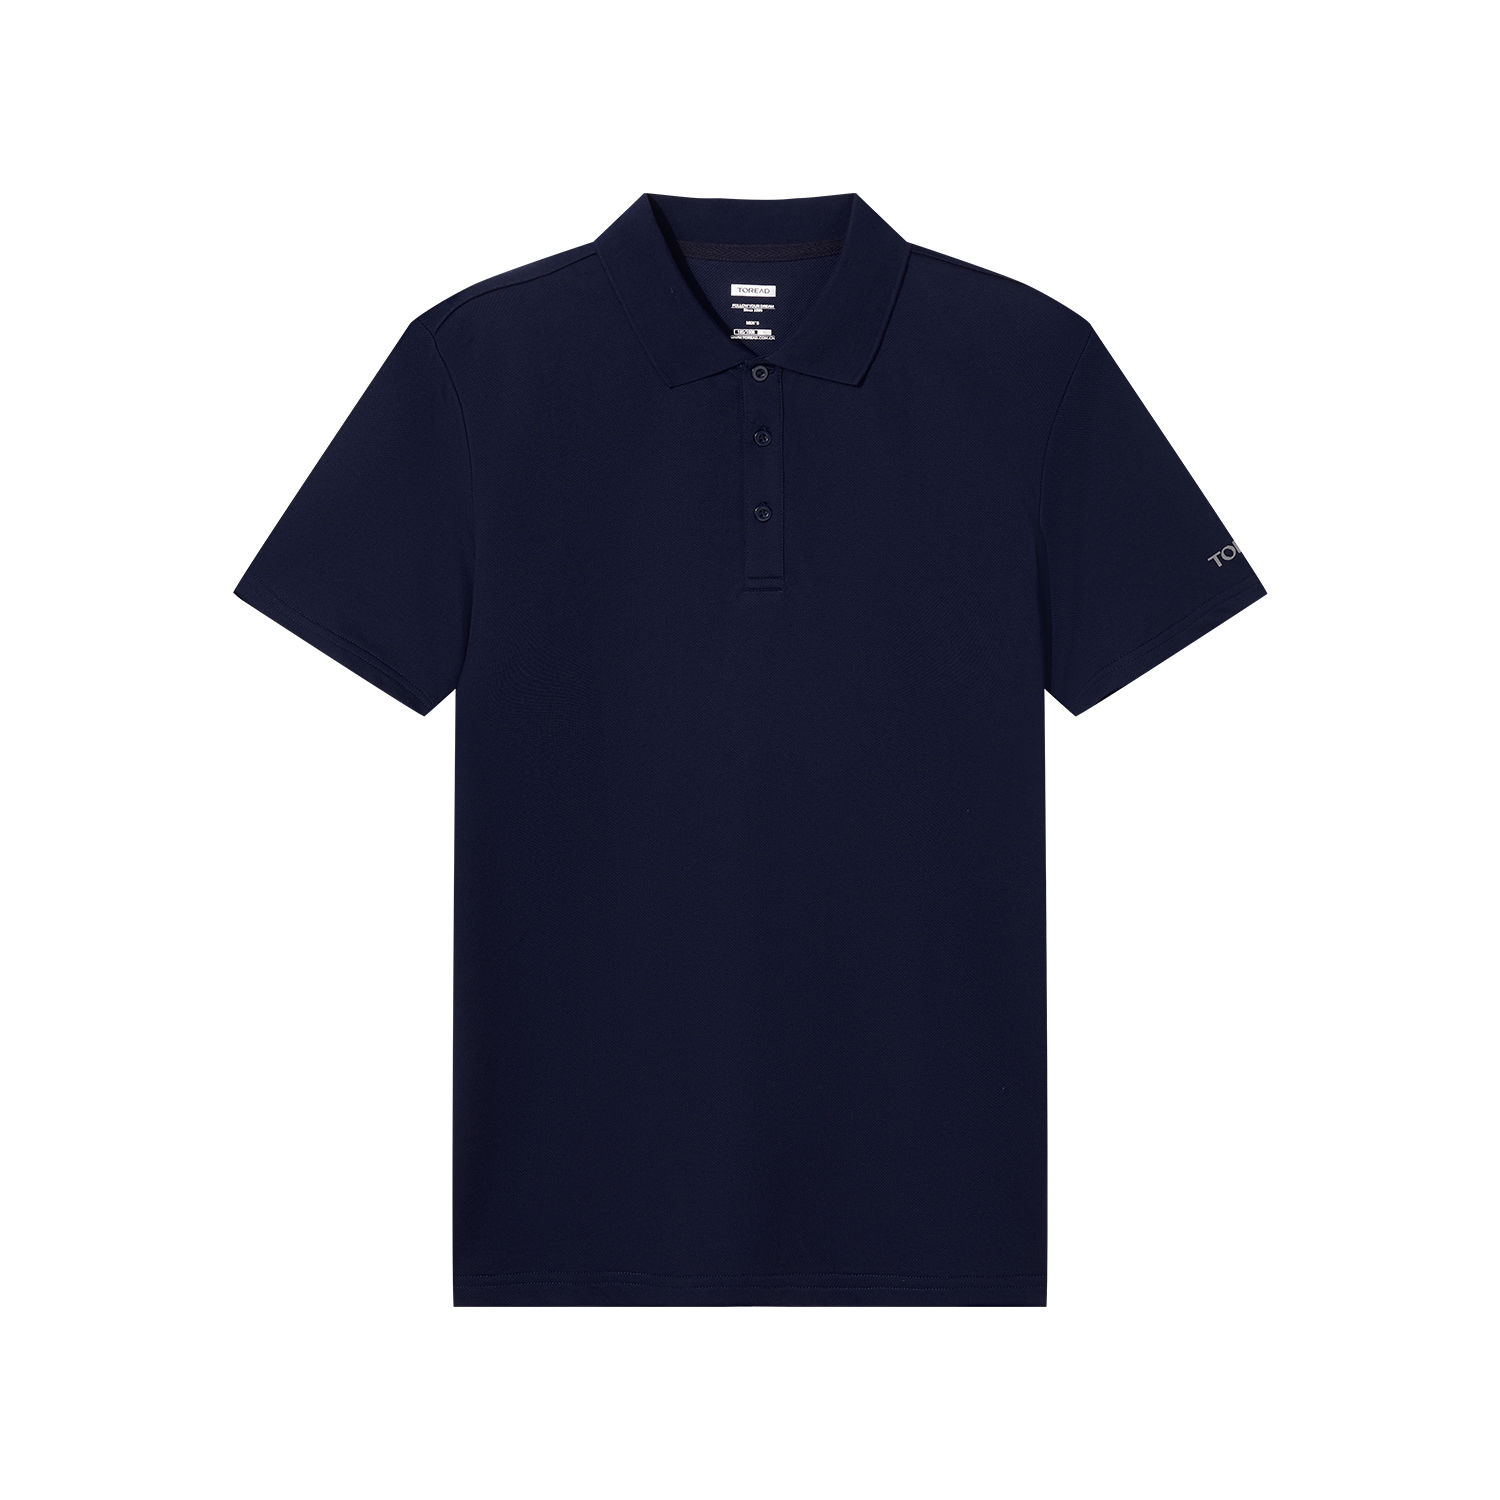 探路者短袖T恤 春夏户外弹力舒适透气徒步男式POLO衫TAJI81299